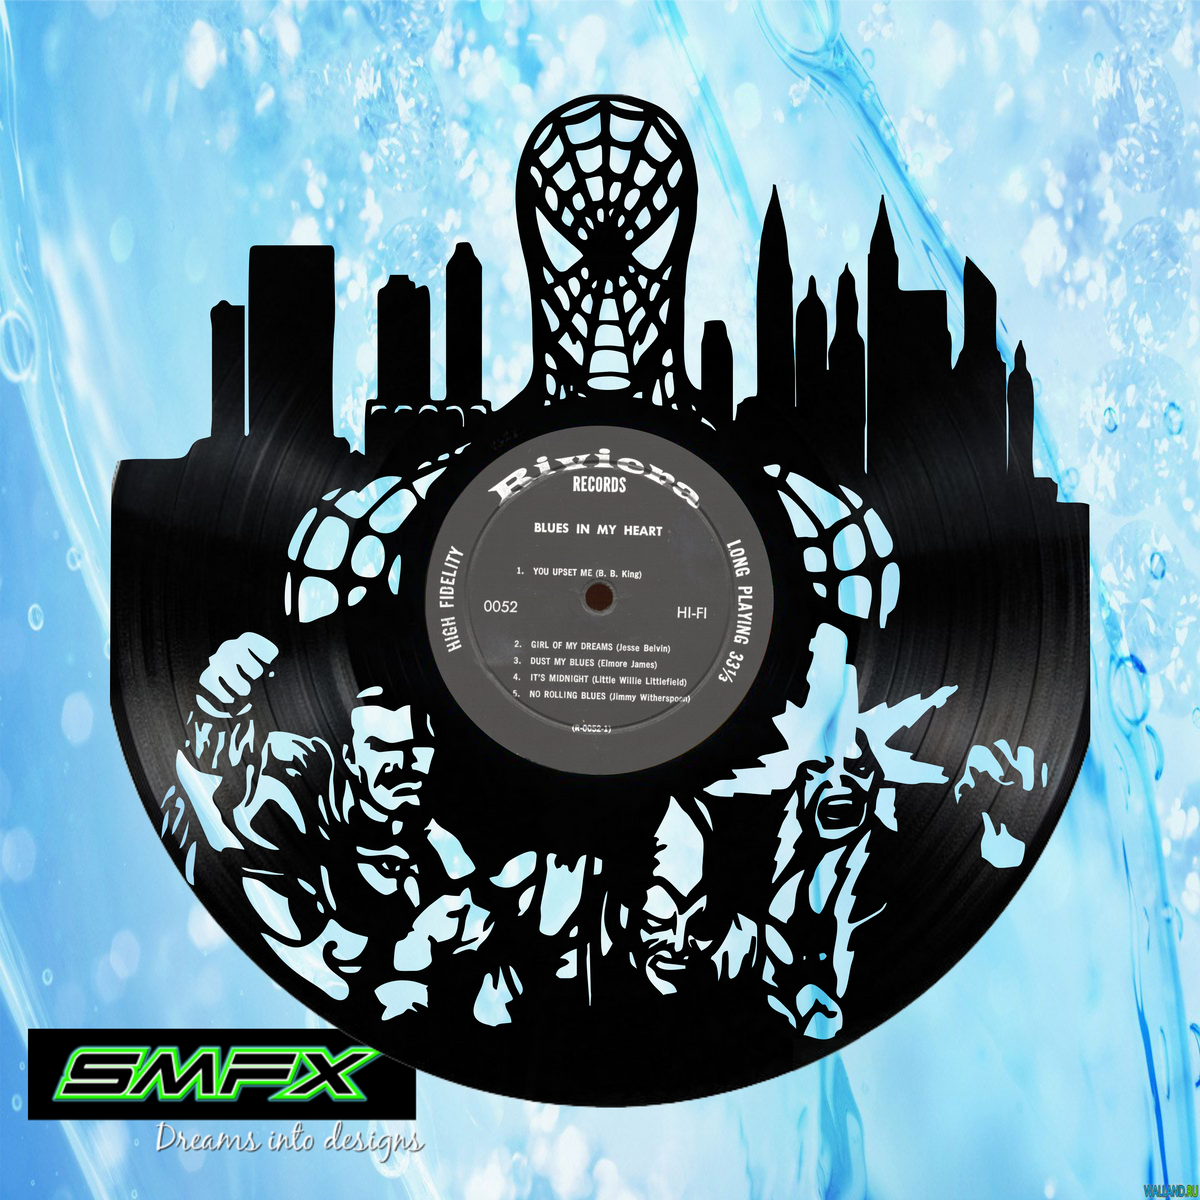 nirvana Laser Cut Vinyl Record artist representation or vinyl clock — SMFX  Designs